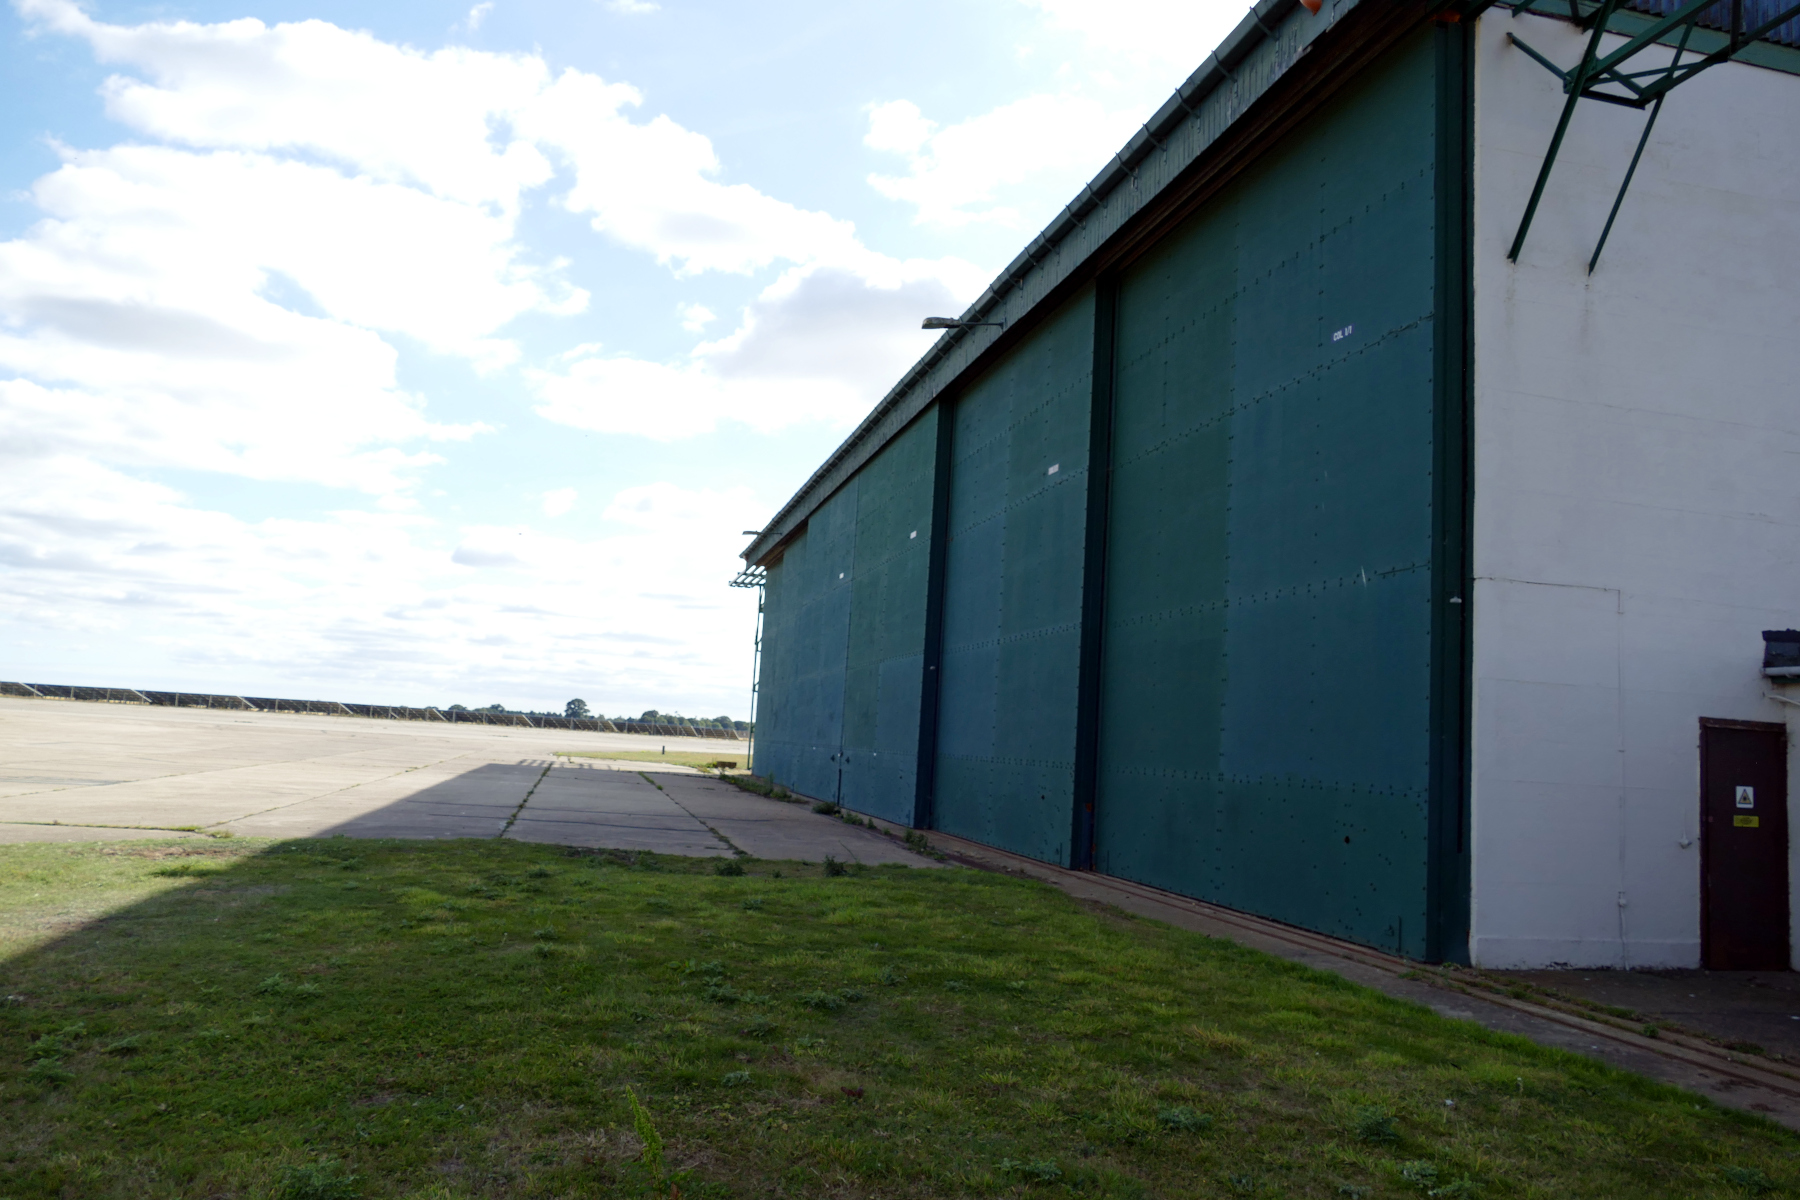 Exterior of original RAF aircraft hangar with large green wall